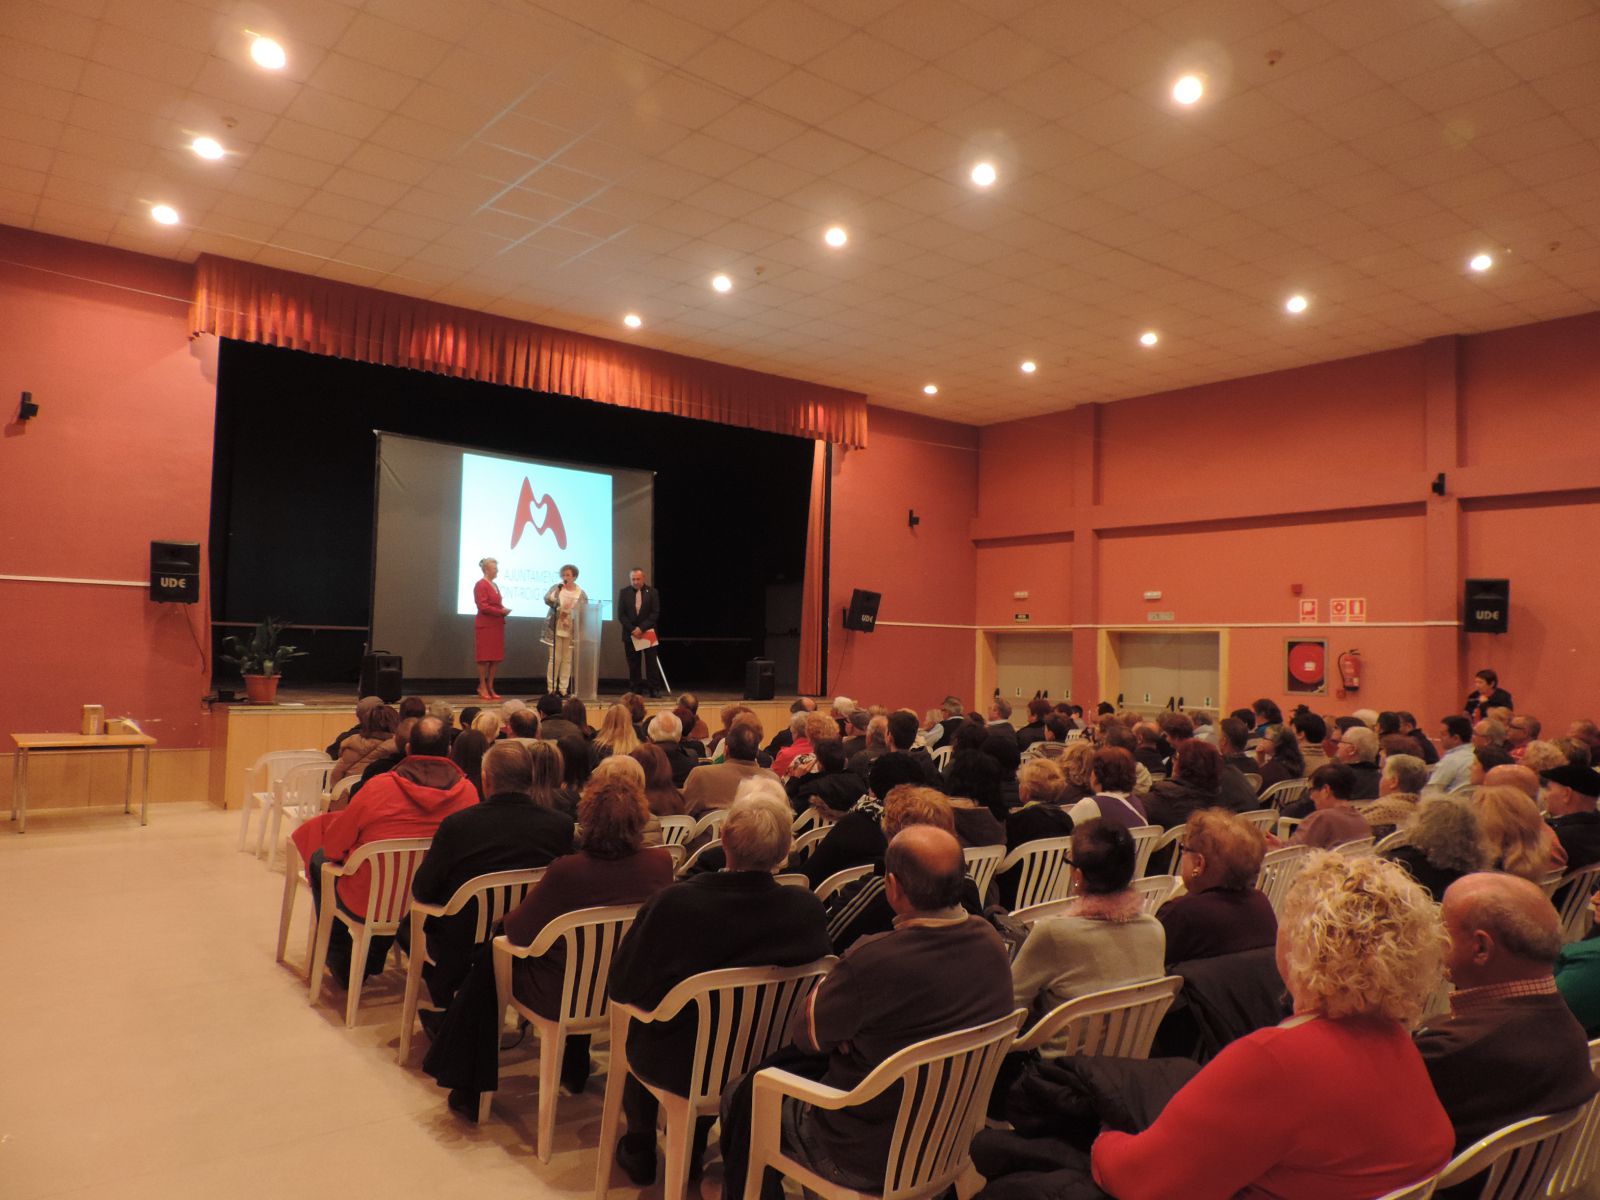 Pregó i presentació documental Festa Major Sant Josep 2015